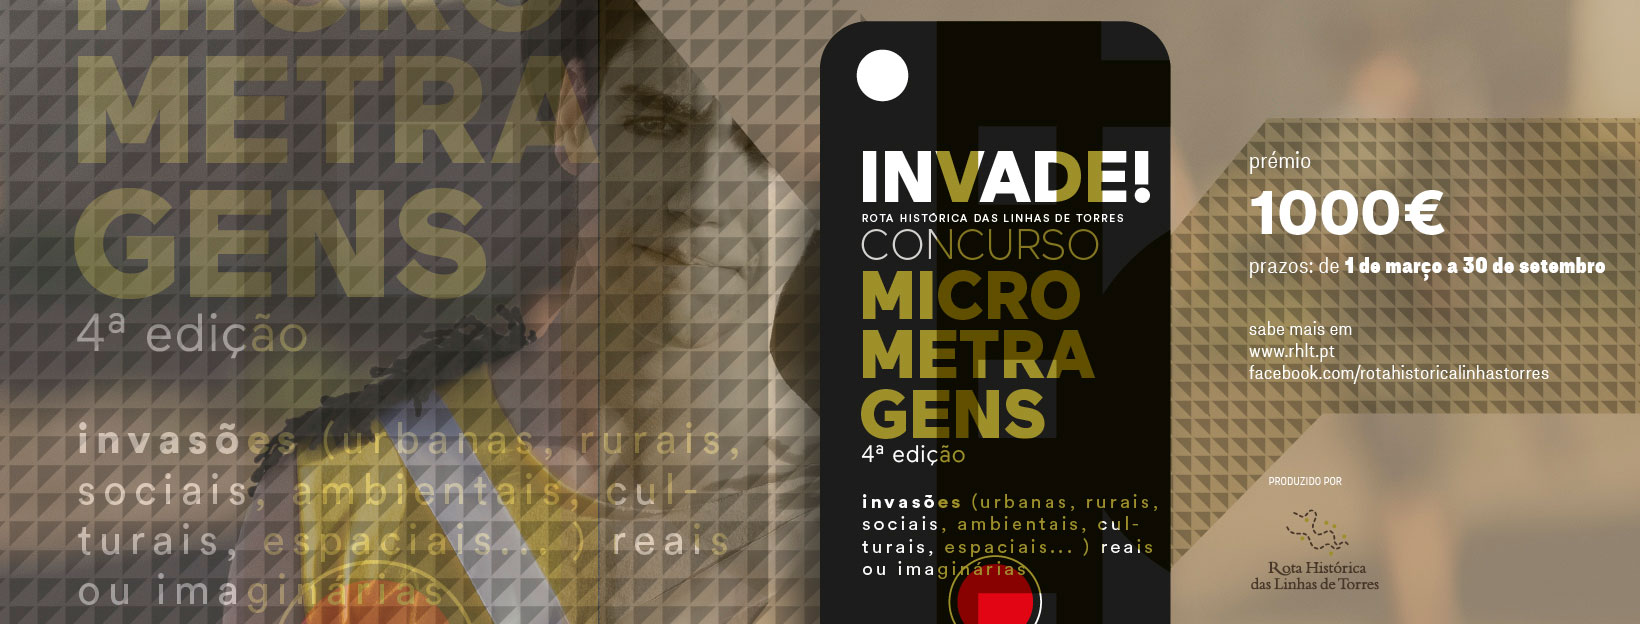 Concurso de Micro Metragens “INVADE”